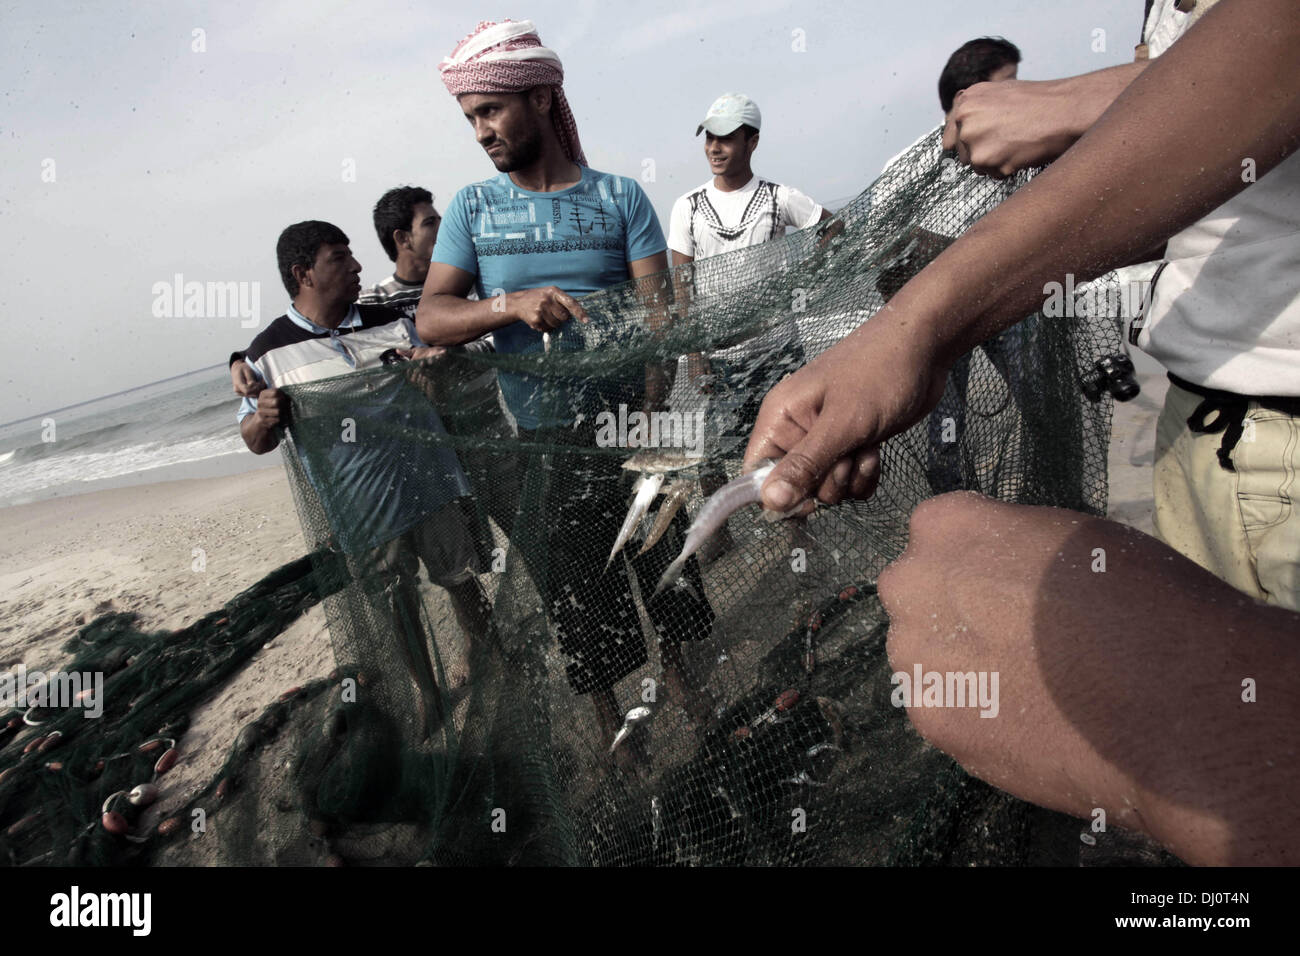 18. November 2013 - Gaza-Stadt, Gazastreifen, Palästina - palästinensische Fischer sammeln Fische aus ihrem Netz am Strand von Gaza-Stadt, am 18. November 2013. Israel beschränkt die Fischereizone auf drei Seemeilen nach der Entführung des israelischen Soldaten Gilad Shalit im Jahr 2007. Die Oslo-Abkommen 1993 mit der palästinensischen Autonomiebehörde unterzeichneten besagen, dass Gaza s Fischereizone auf 20 Seemeilen auszudehnen. Die Zone wurde dann erweitert auf sechs Seemeilen als Bestandteil der ägyptischen vermittelten Waffenstillstand im November 2012, aber Israel zeitweise reduzieren auf drei Seemeilen jedes tim Stockfoto